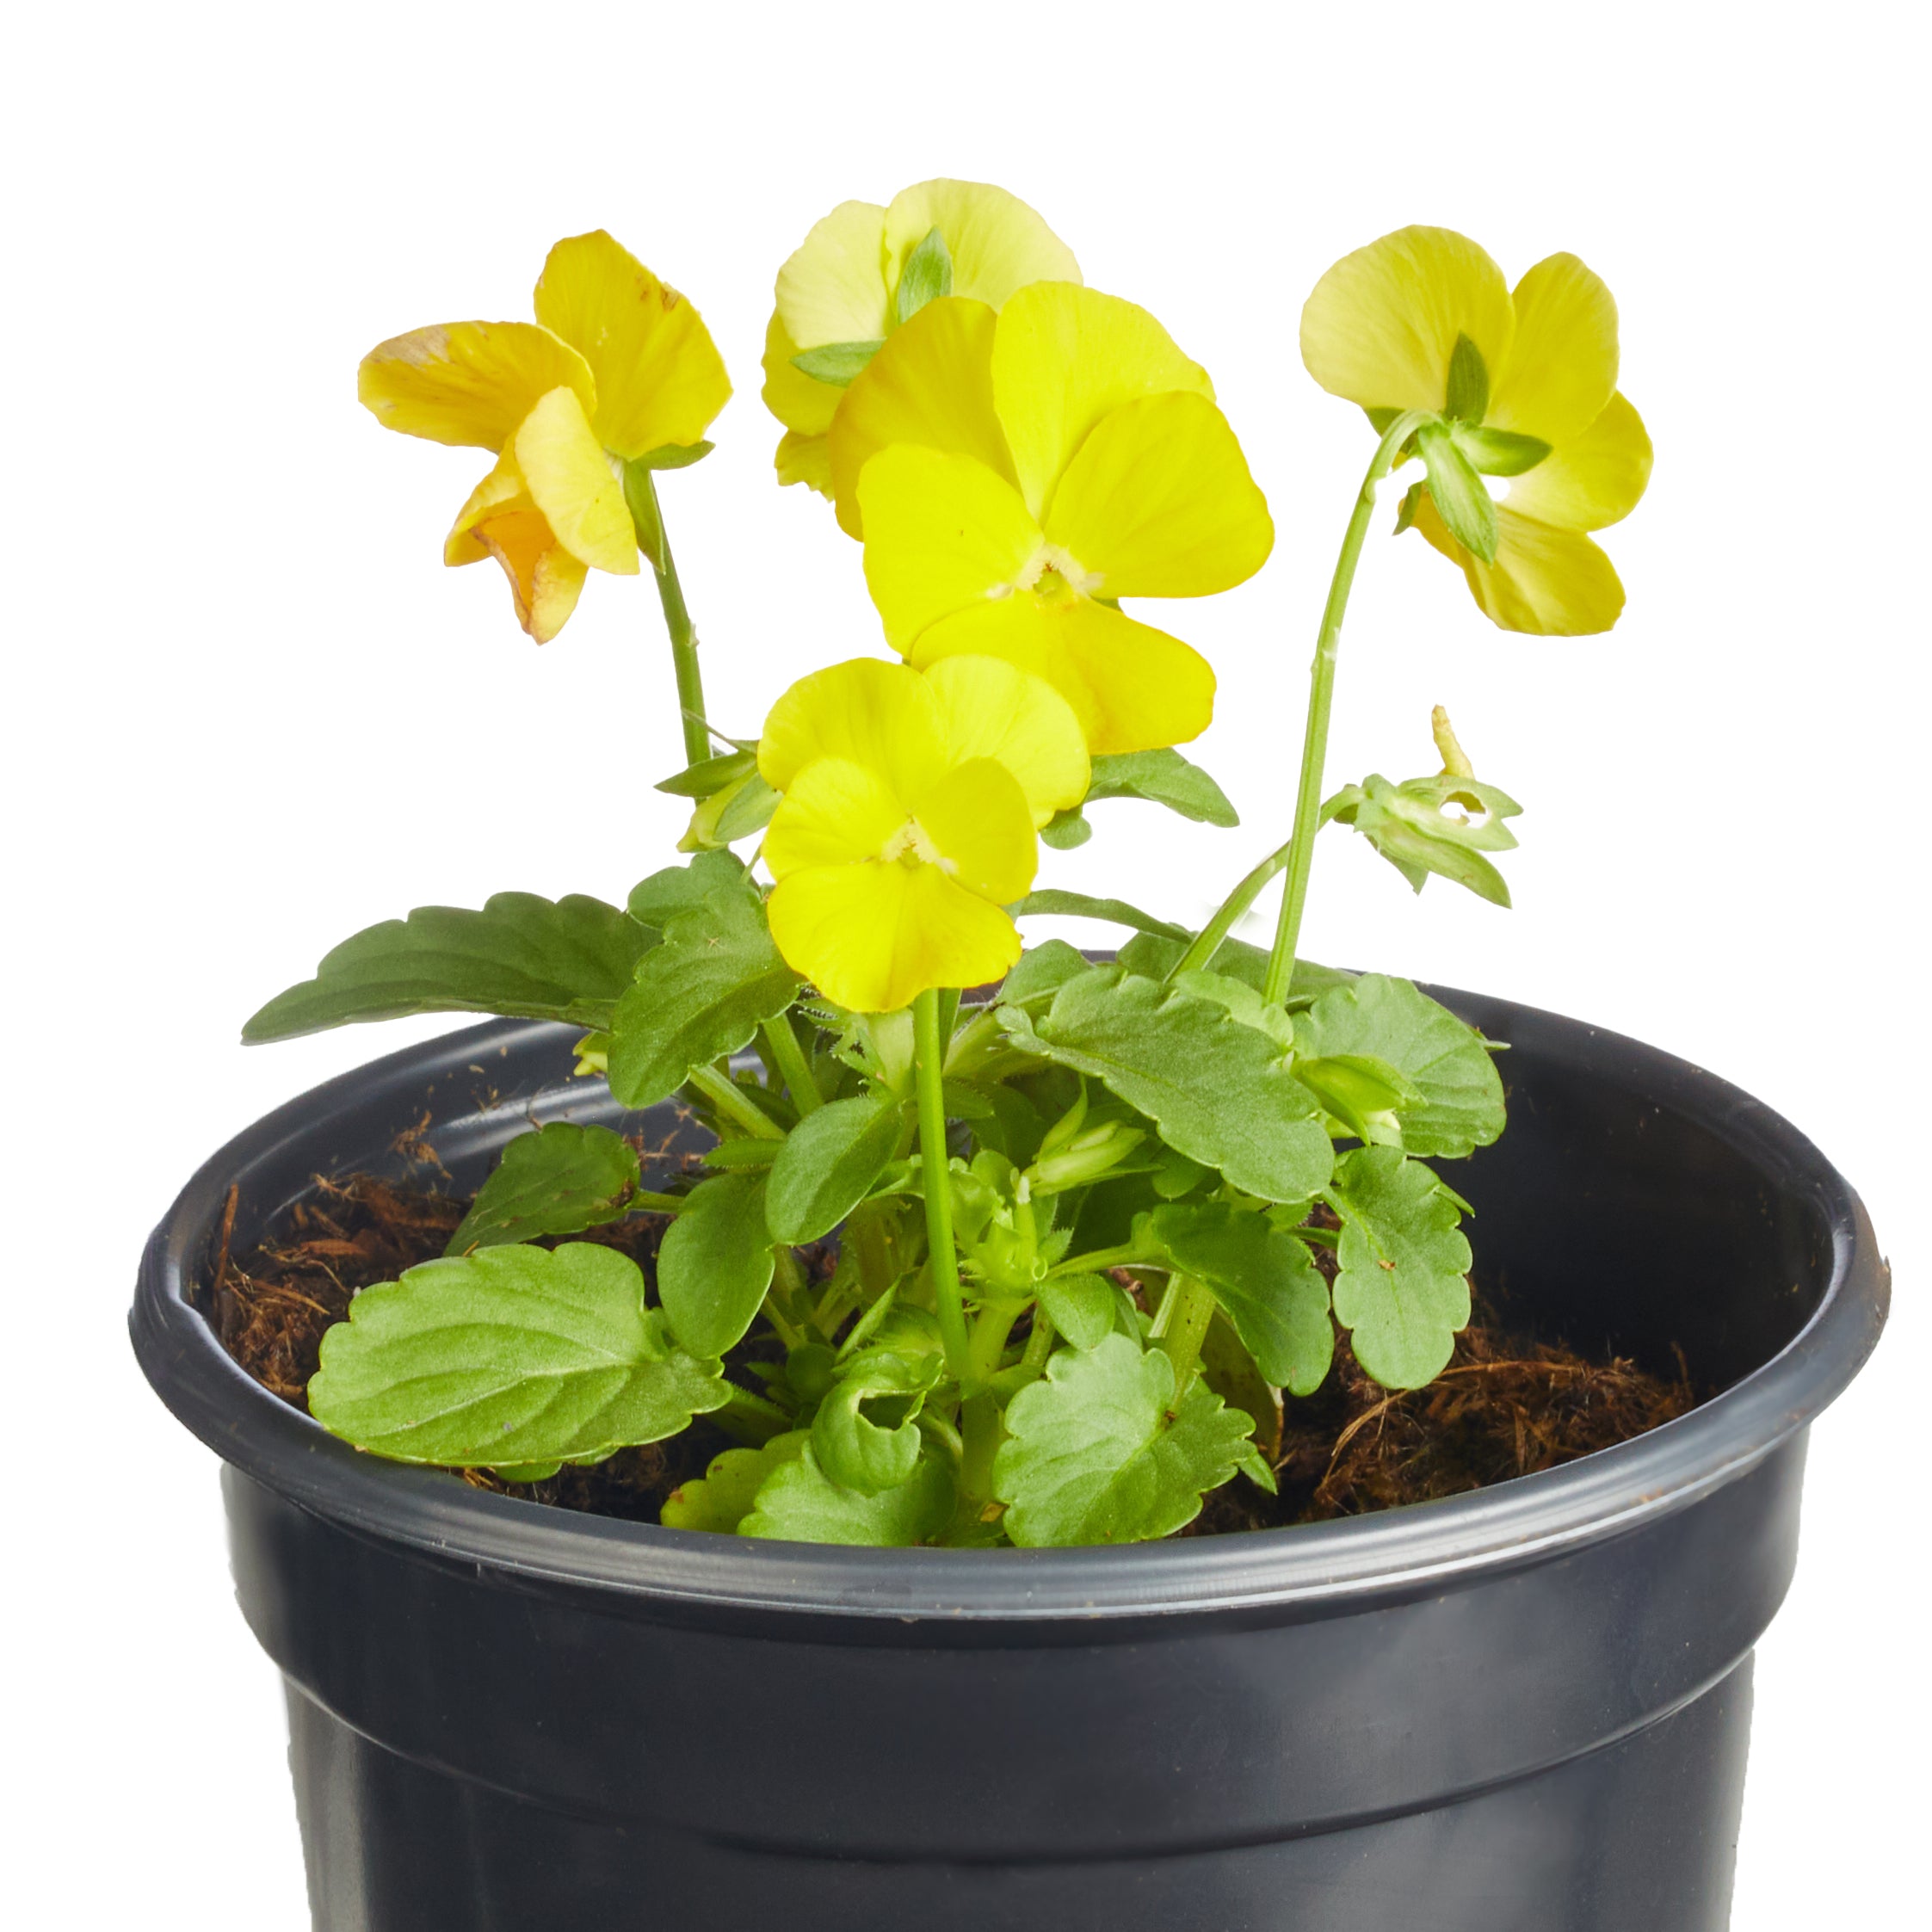 Ferry-Morse Plantlings Viola Sorbet Harvest Mix Live Baby Flower